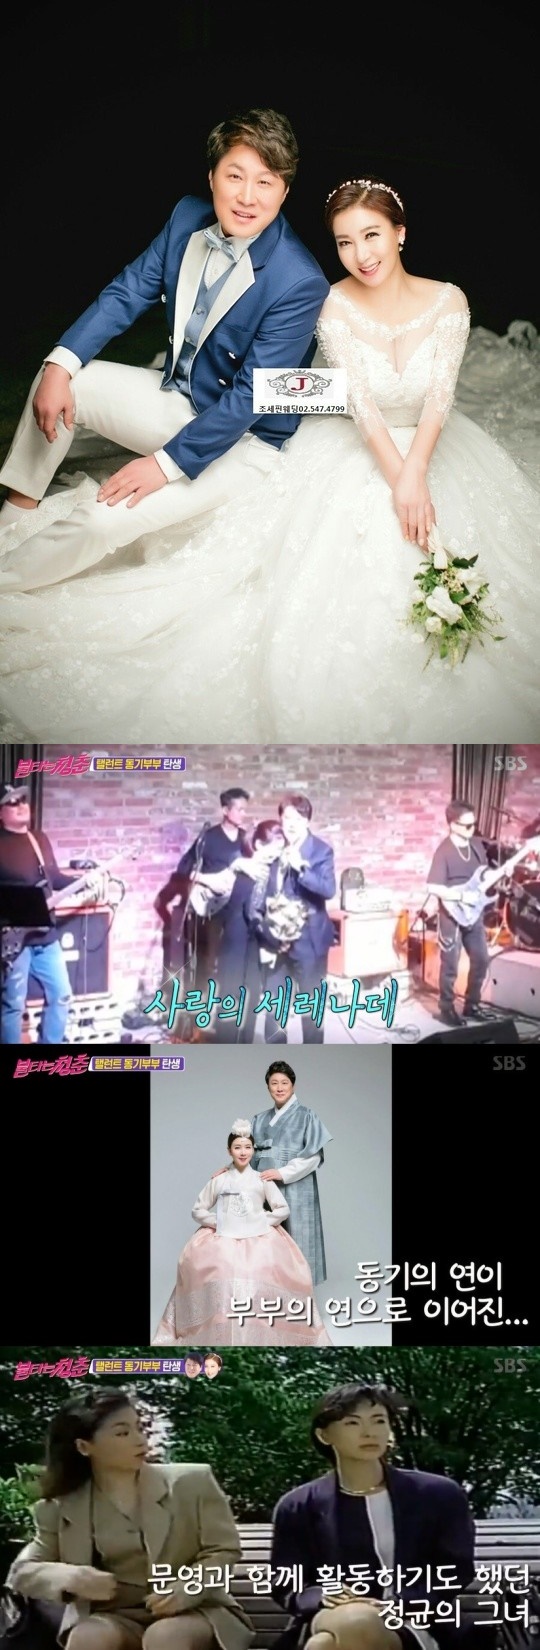 Kim Jung-kyun mengumumkan pernikahan dengan aktor Jung Min-kyung melalui pembakaran pemuda